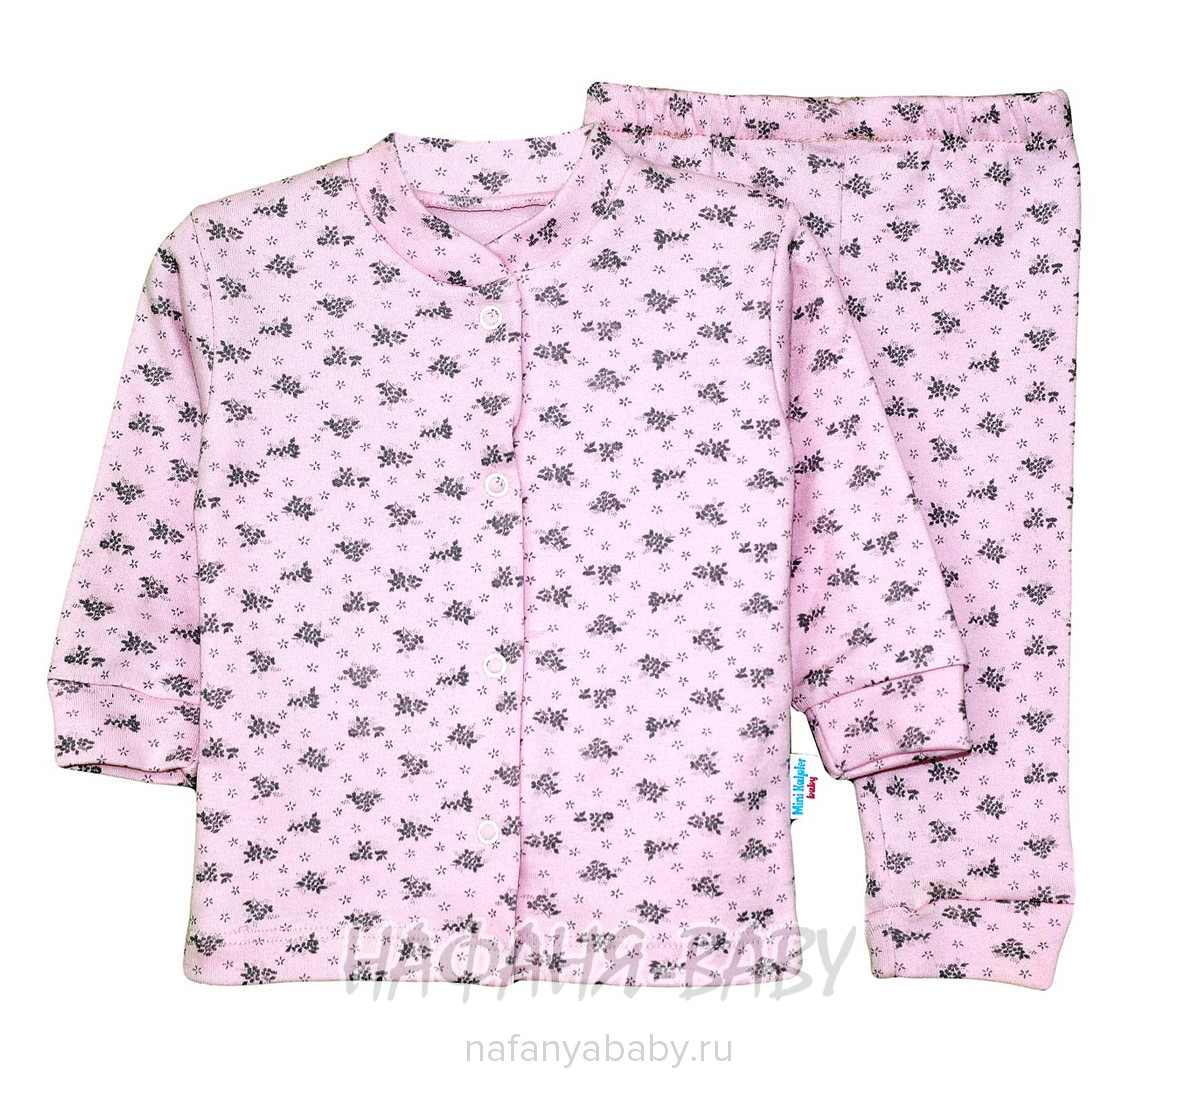 Детский комплект (кофта+брючки) Mini KALPLER арт: 6516, 0-12 мес, цвет розовый, оптом Турция